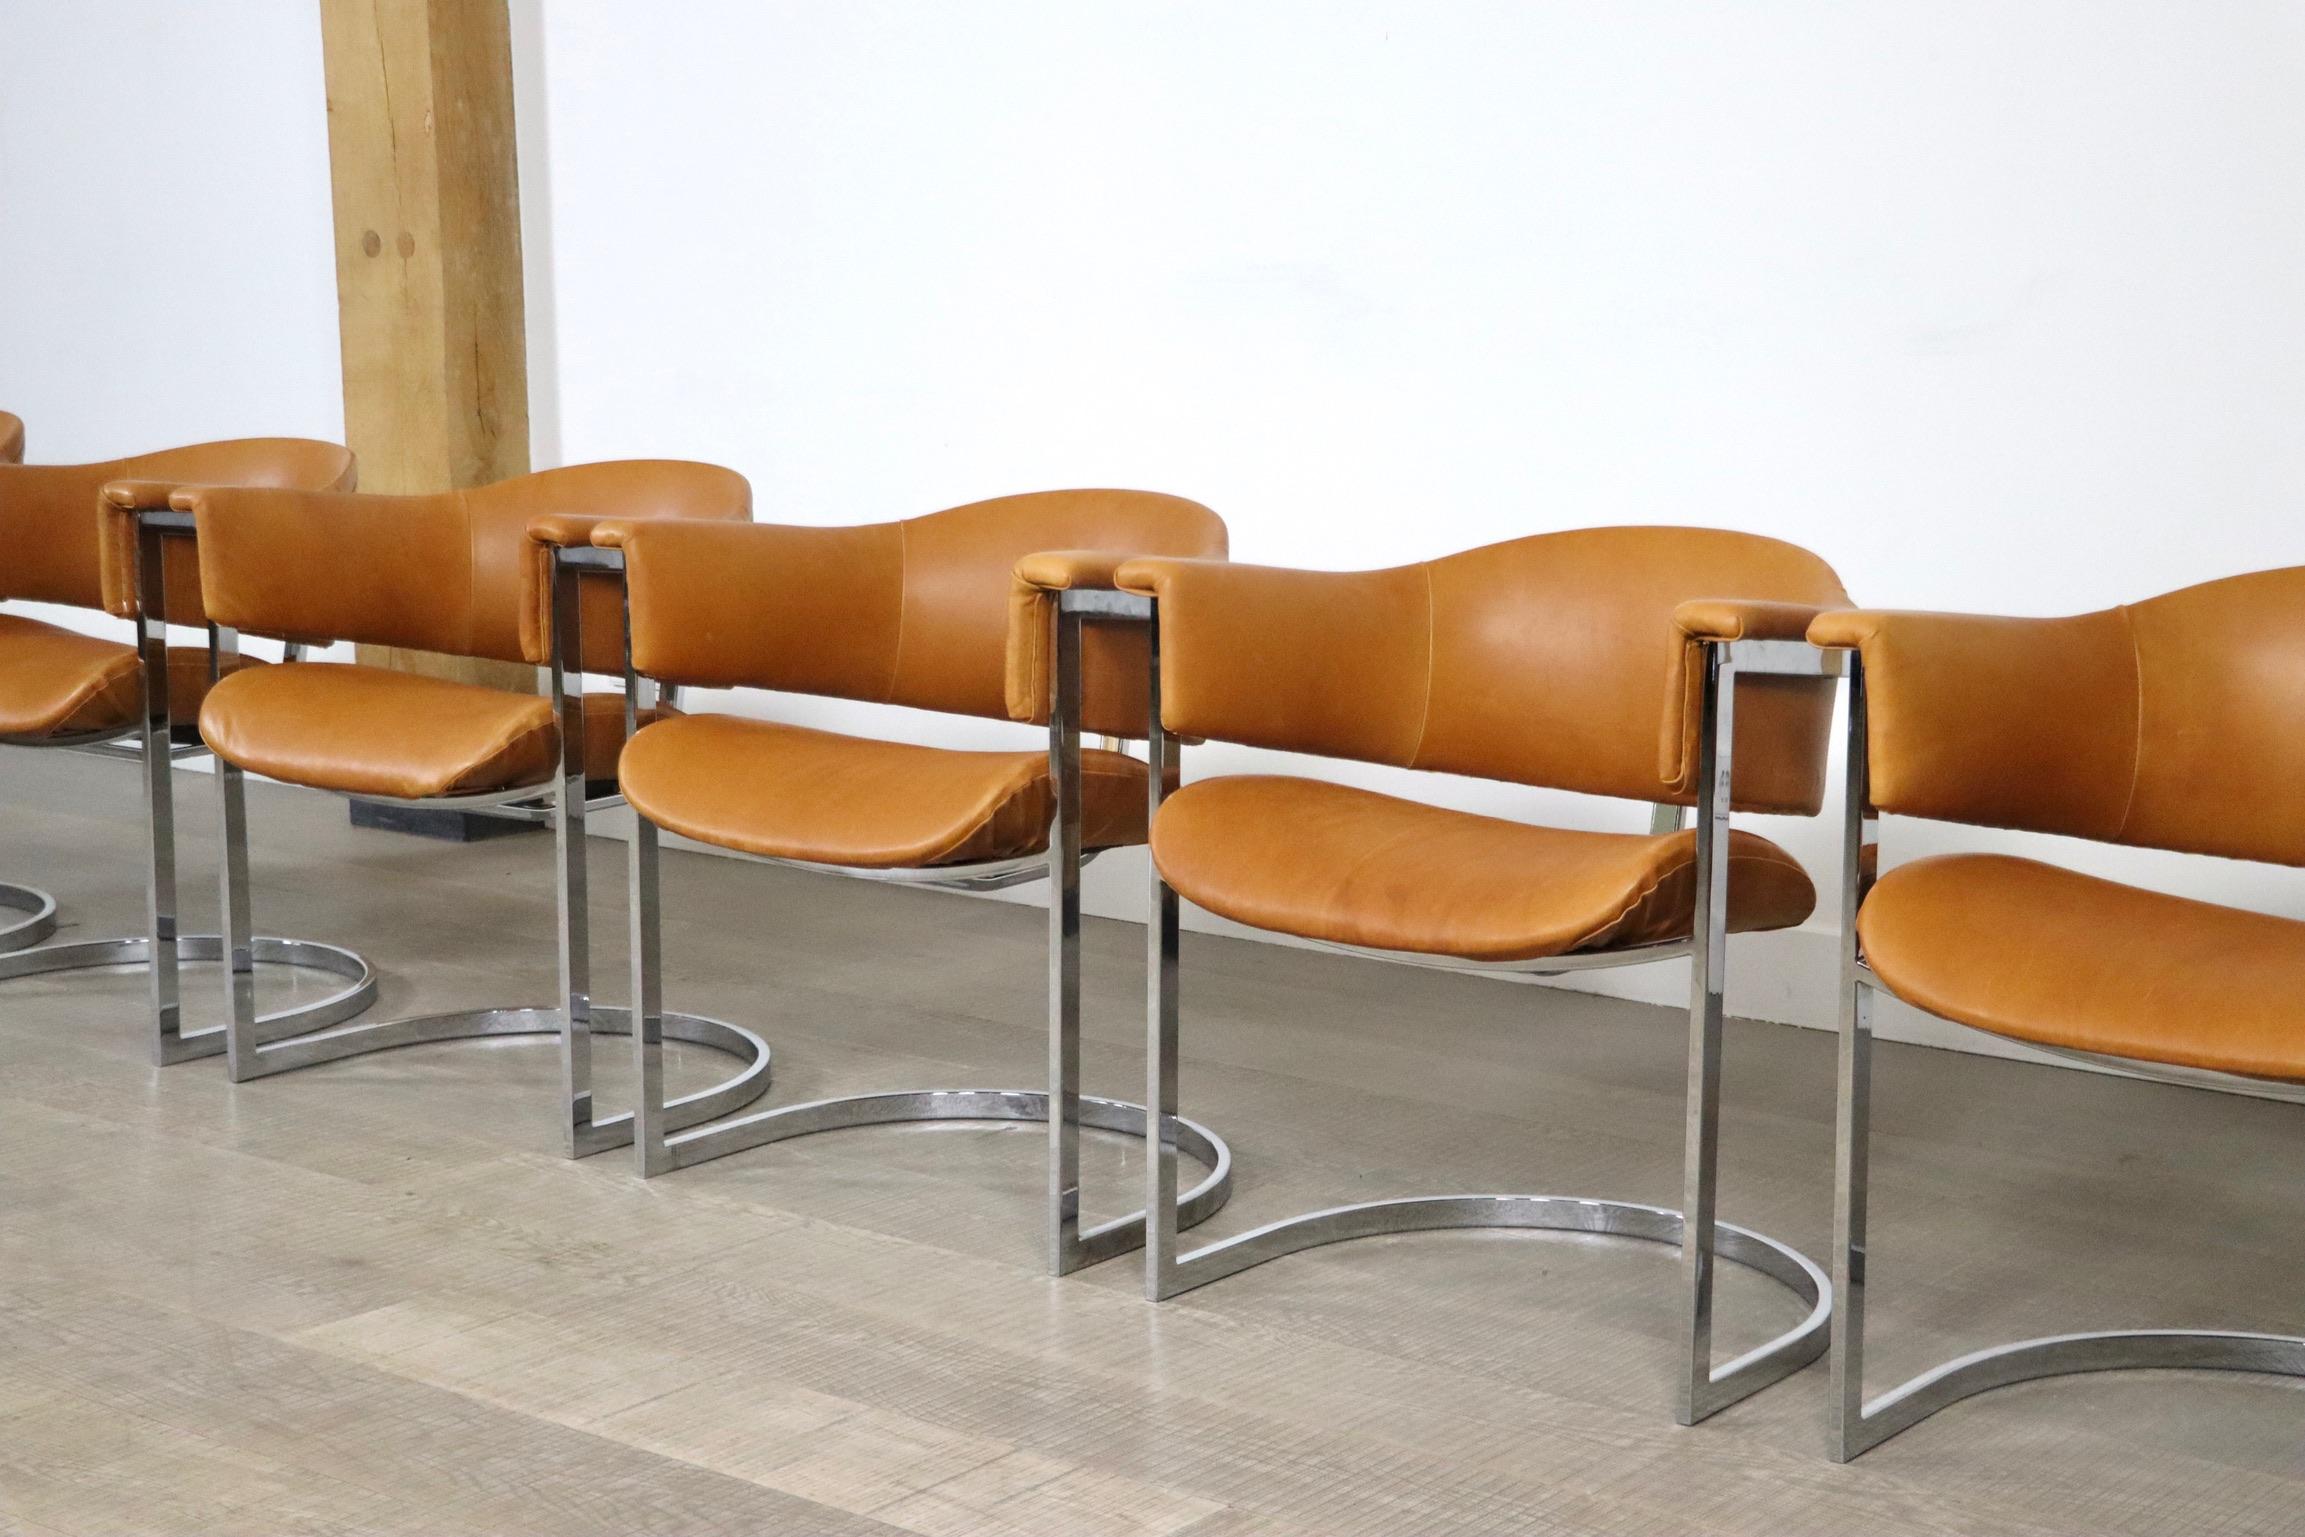 Superbe ensemble de 6 chaises de salle à manger en porte-à-faux en acier chromé et cuir cognac par Vittorio Introini pour Mario Sabot, Italie, années 1970. 
Cet ensemble incroyable est à côté de son design exceptionnel très confortable. L'assise et